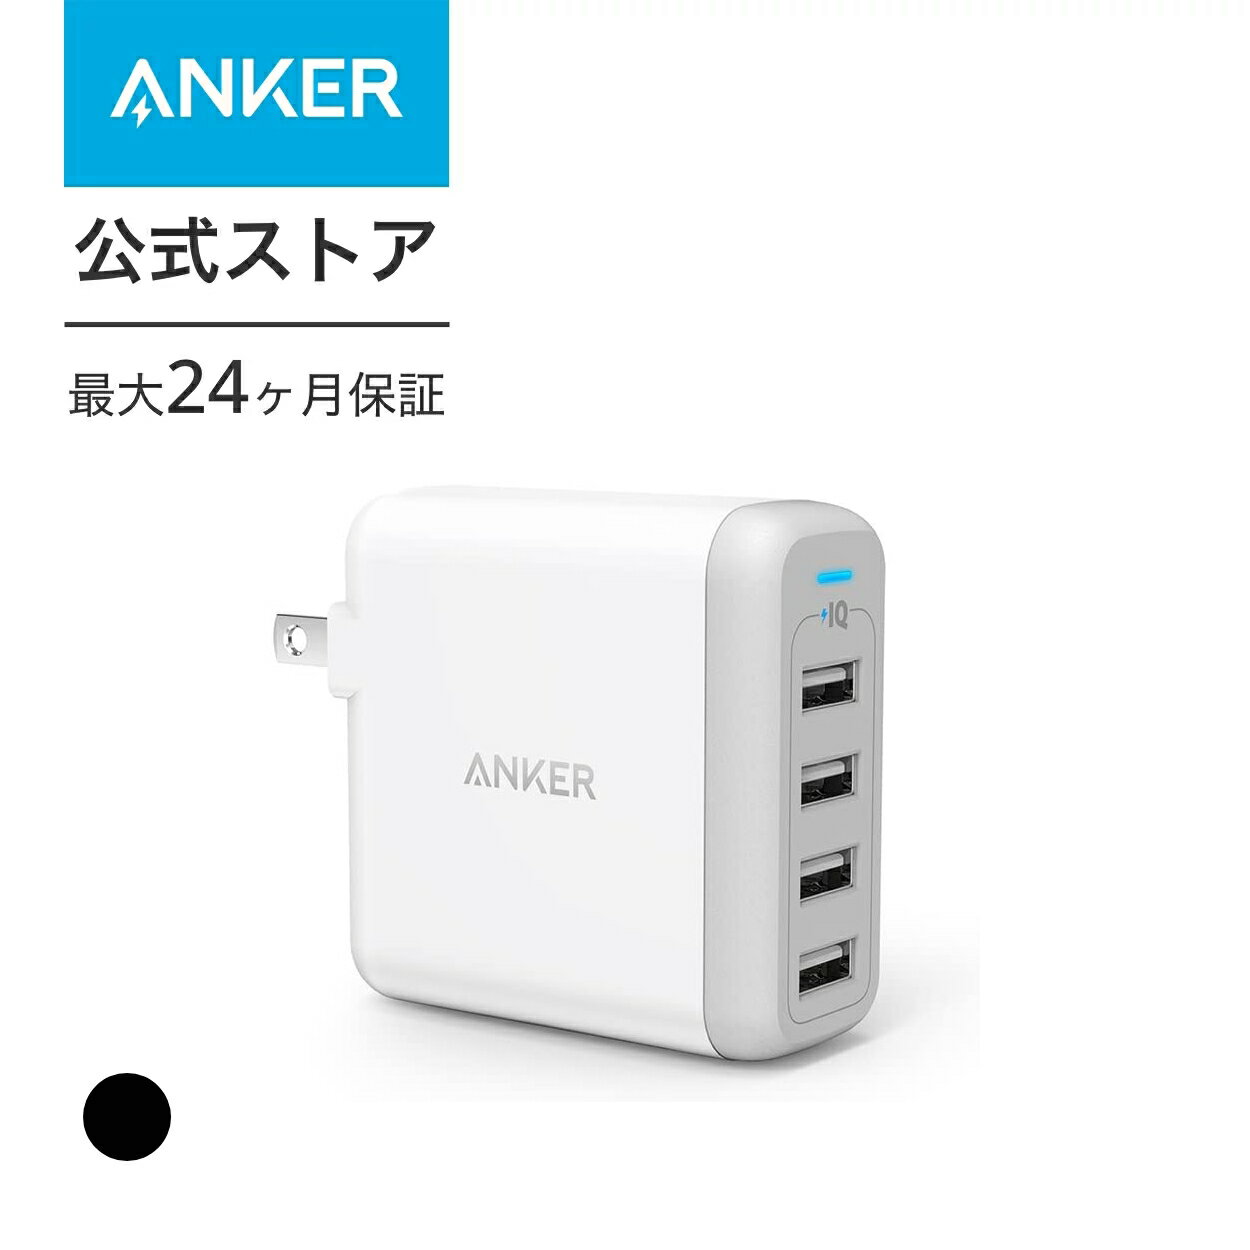 急速充電器 Anker PowerPort 4 USB急速充